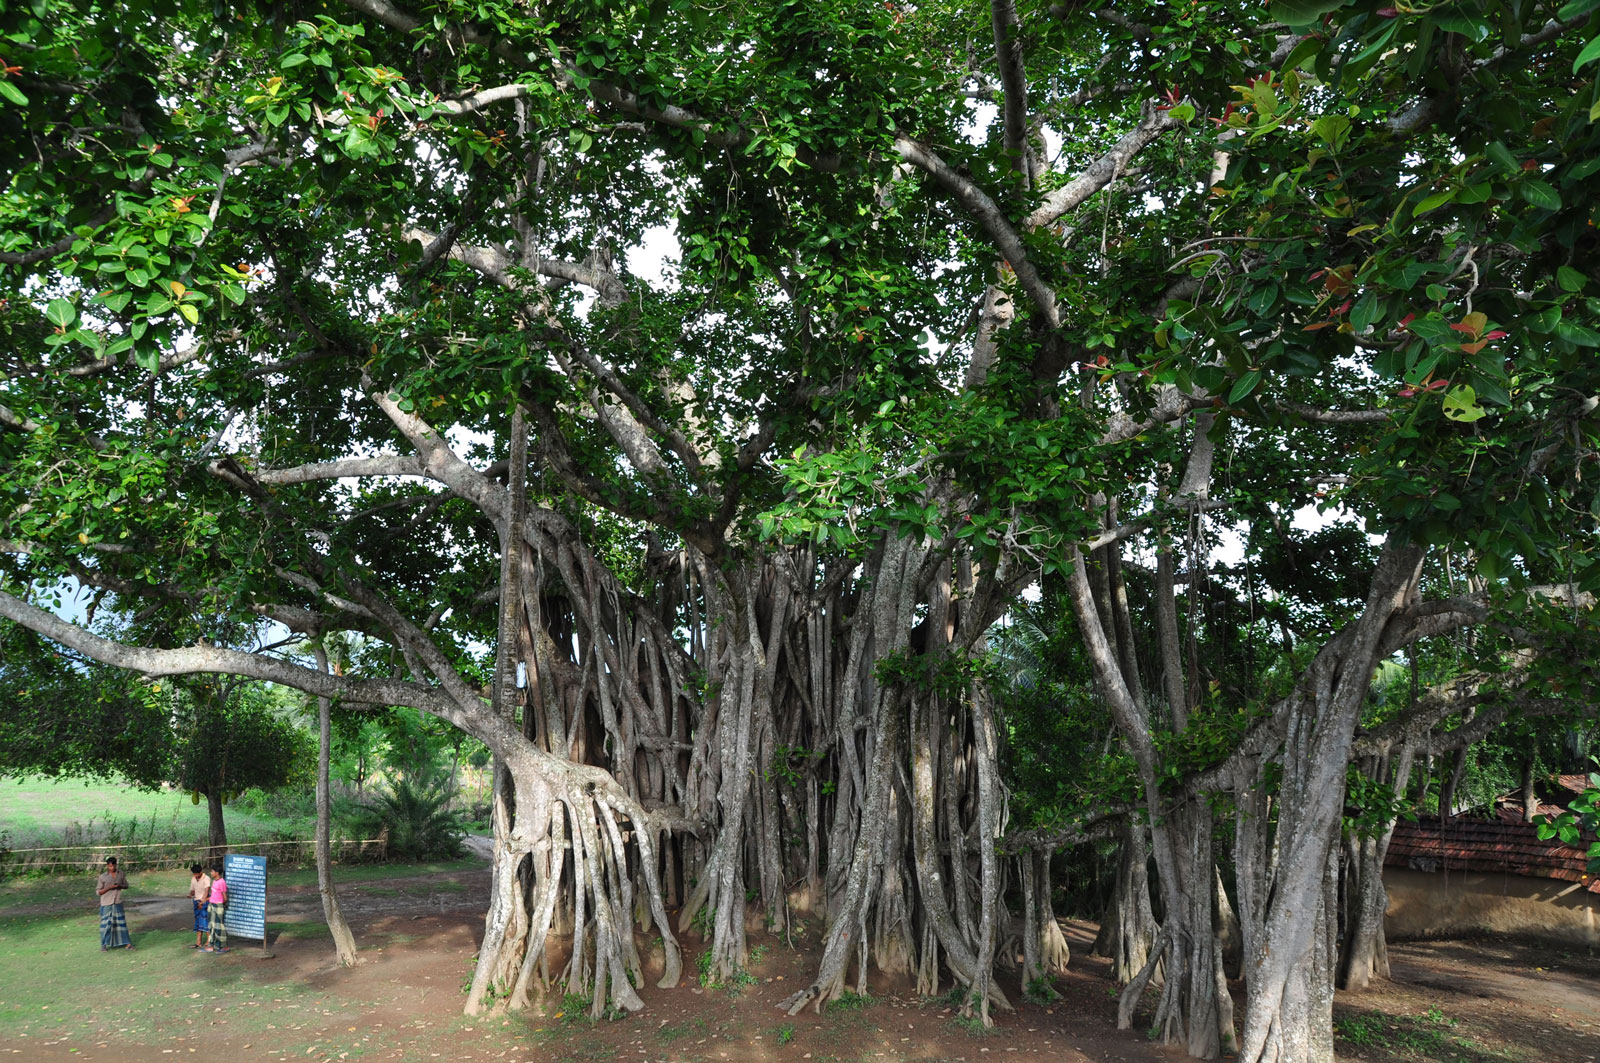 A banyan tree in Bangladesh